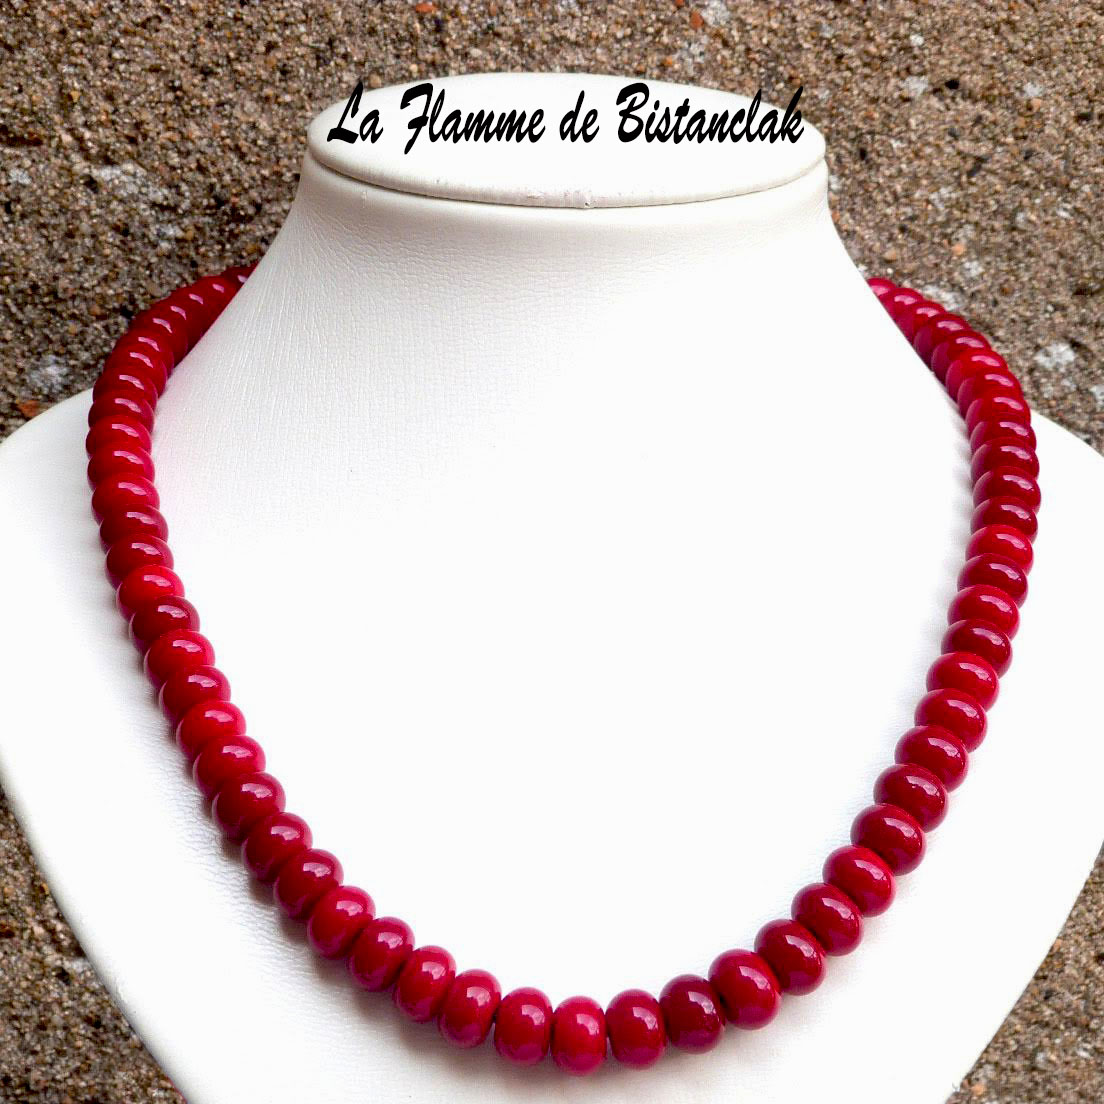 Collier perles de verre rouge opaque vendu en ligne sur notre site un bijou artisanal fabrique en france